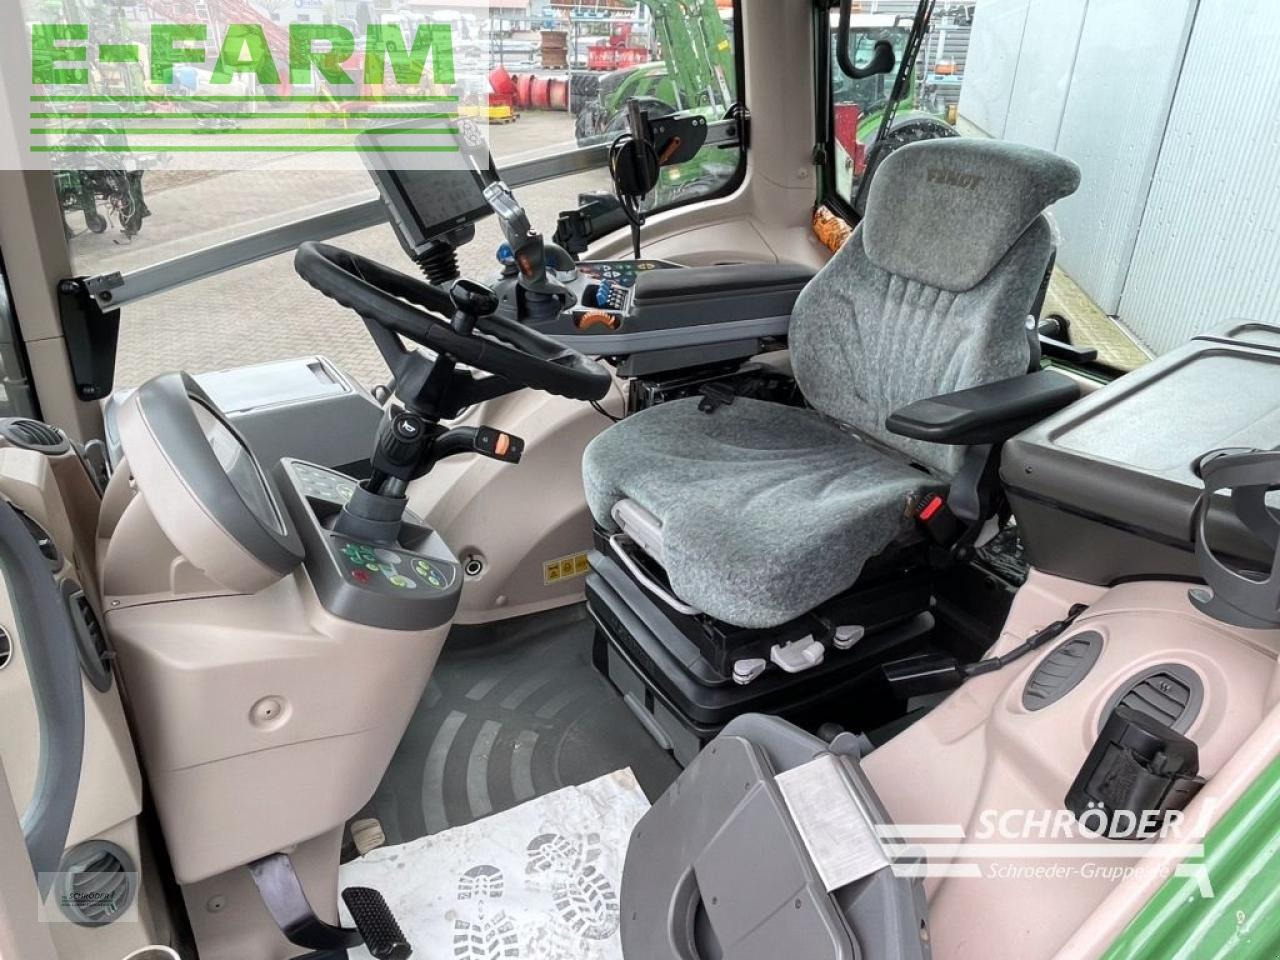 Farm tractor Fendt 828 s4 profi plus: picture 6